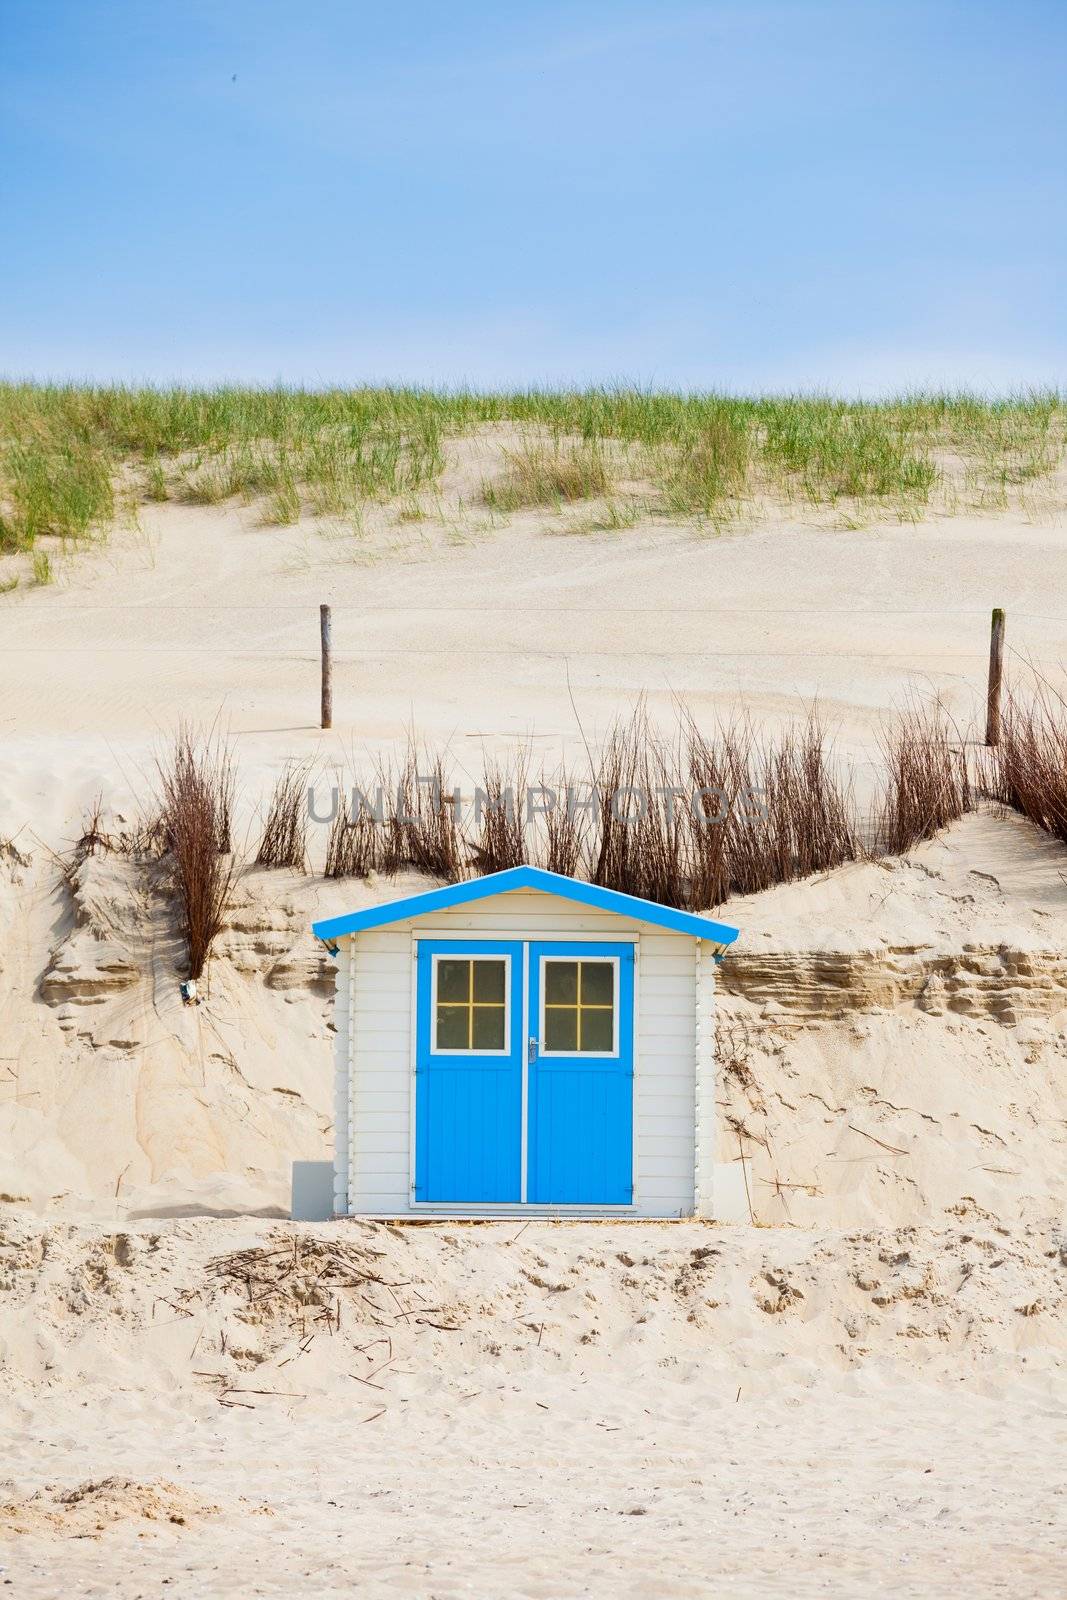 House on the beach with blue sky by maxoliki